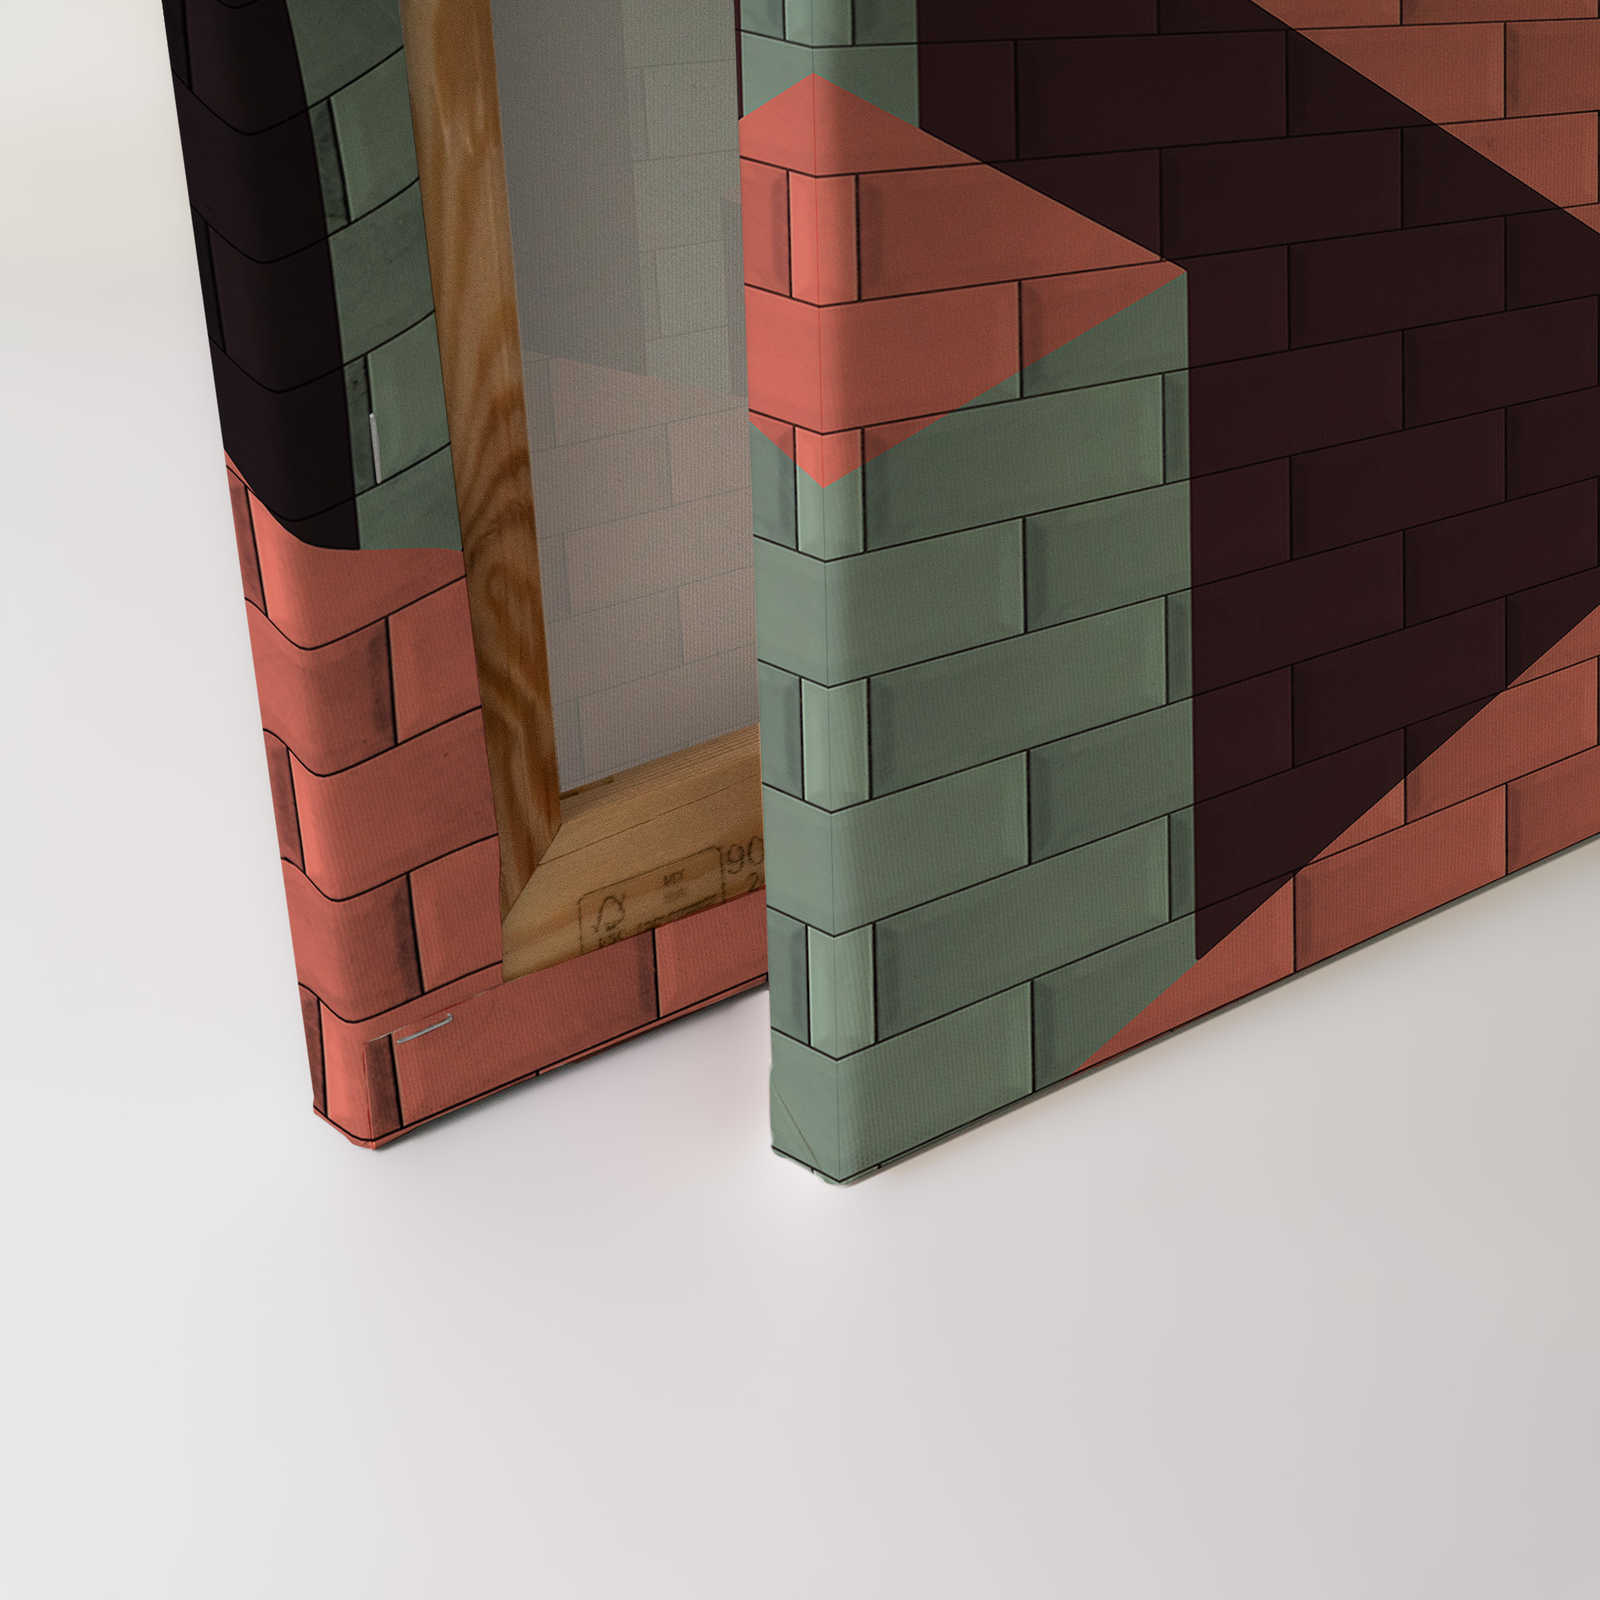             Toile Mur de briques avec peinture en bloc | rouge, rose, vert - 0,90 m x 0,60 m
        